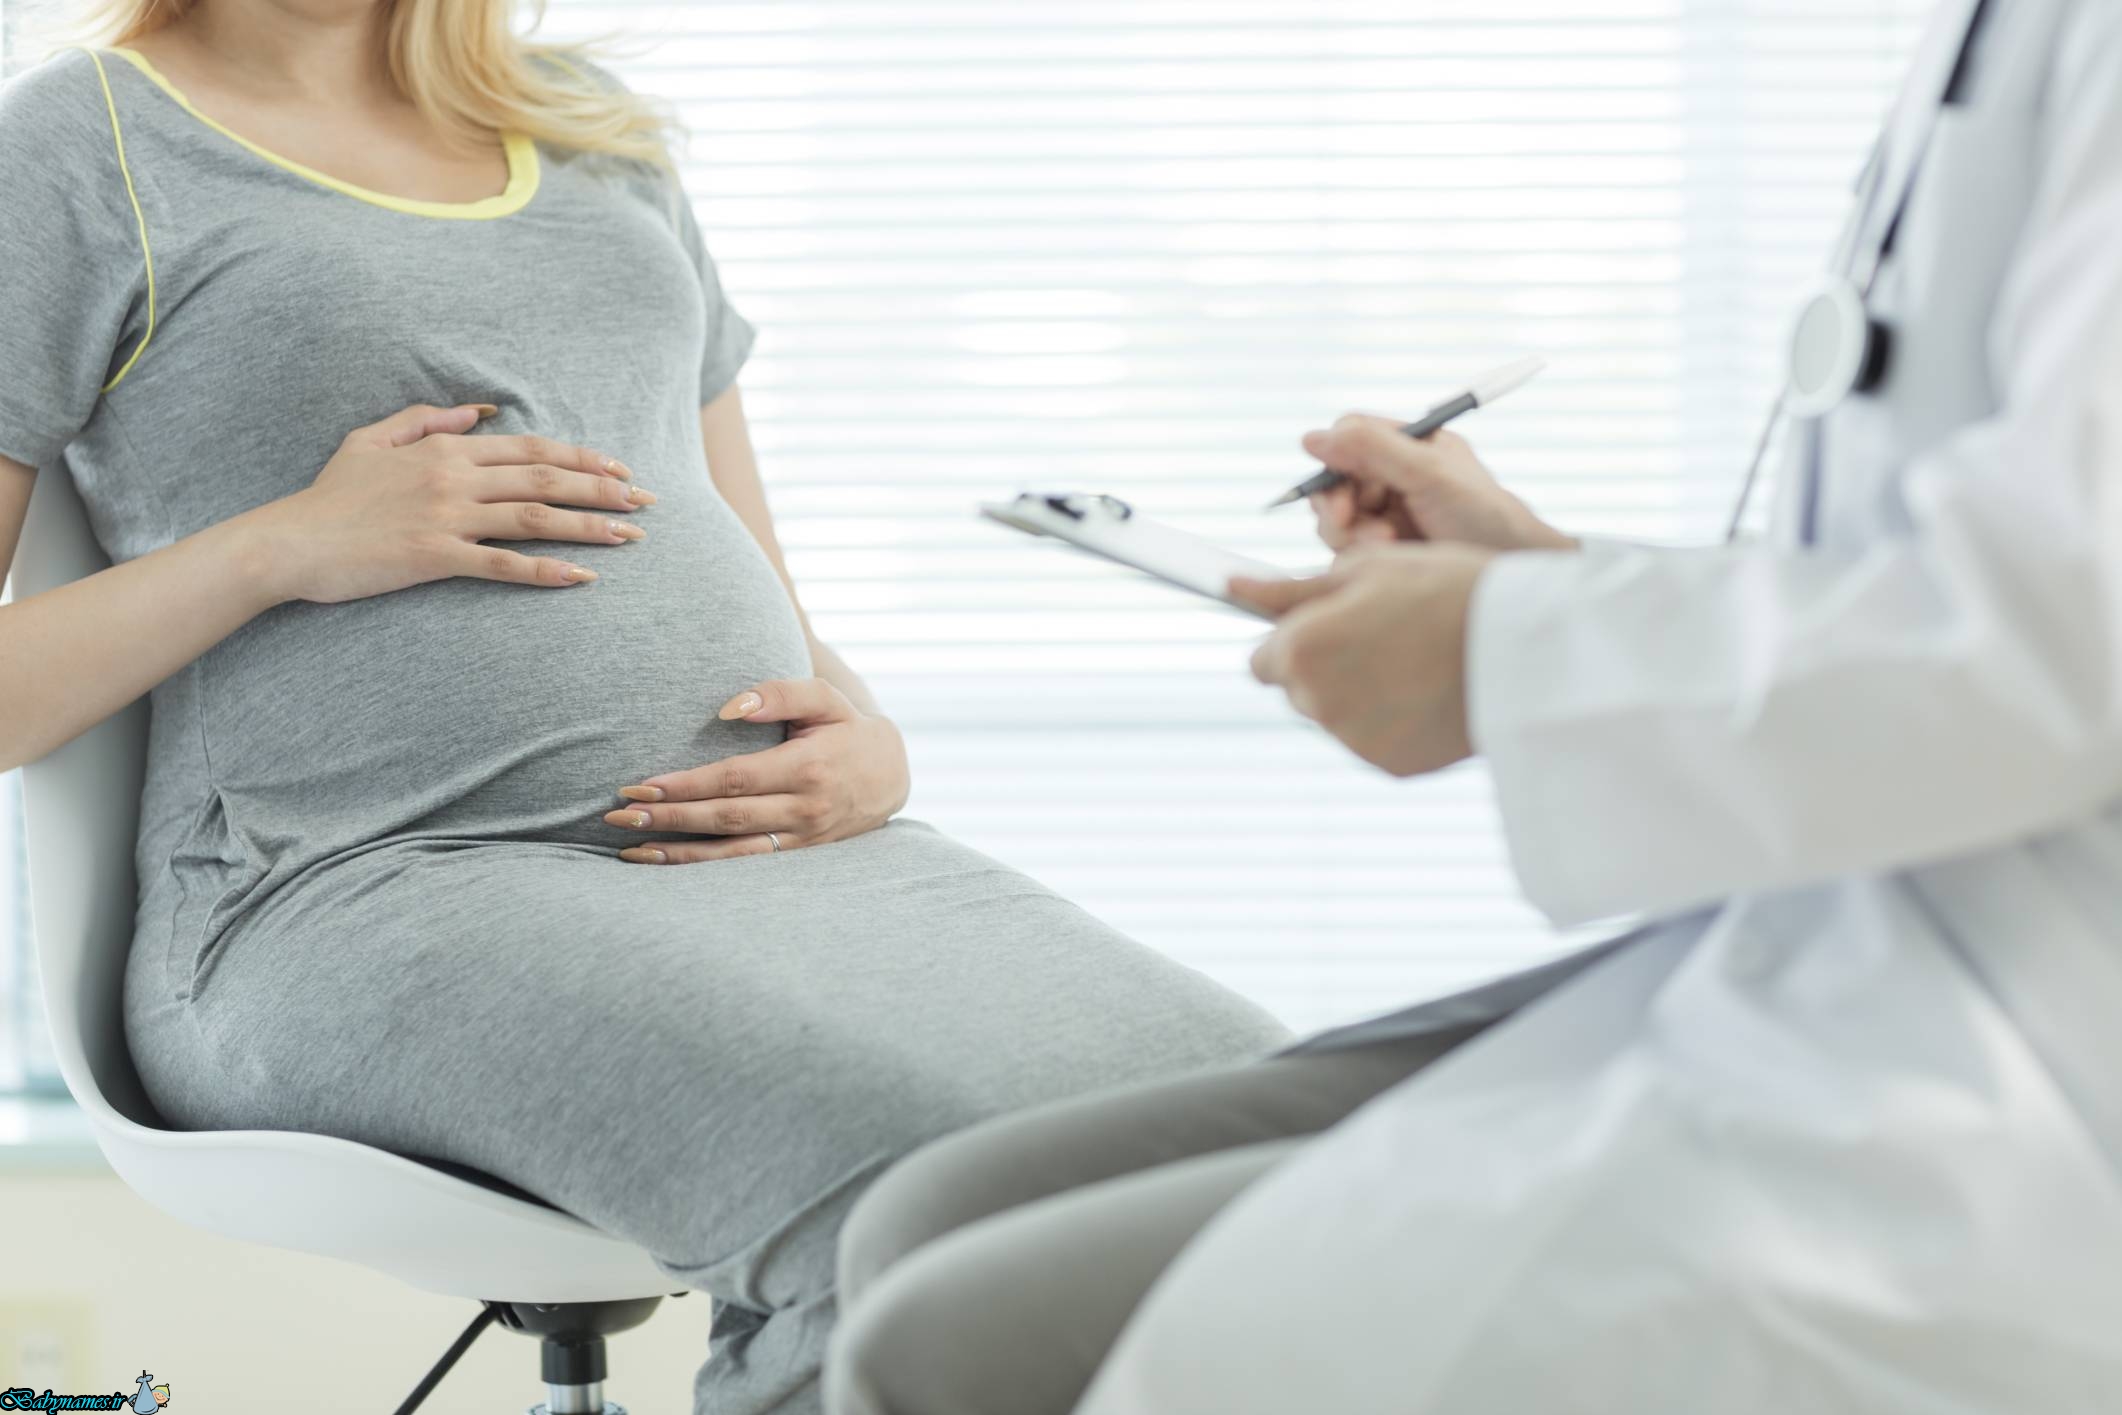 سرطان در دوران بارداری و تأثیر آن بر جنین